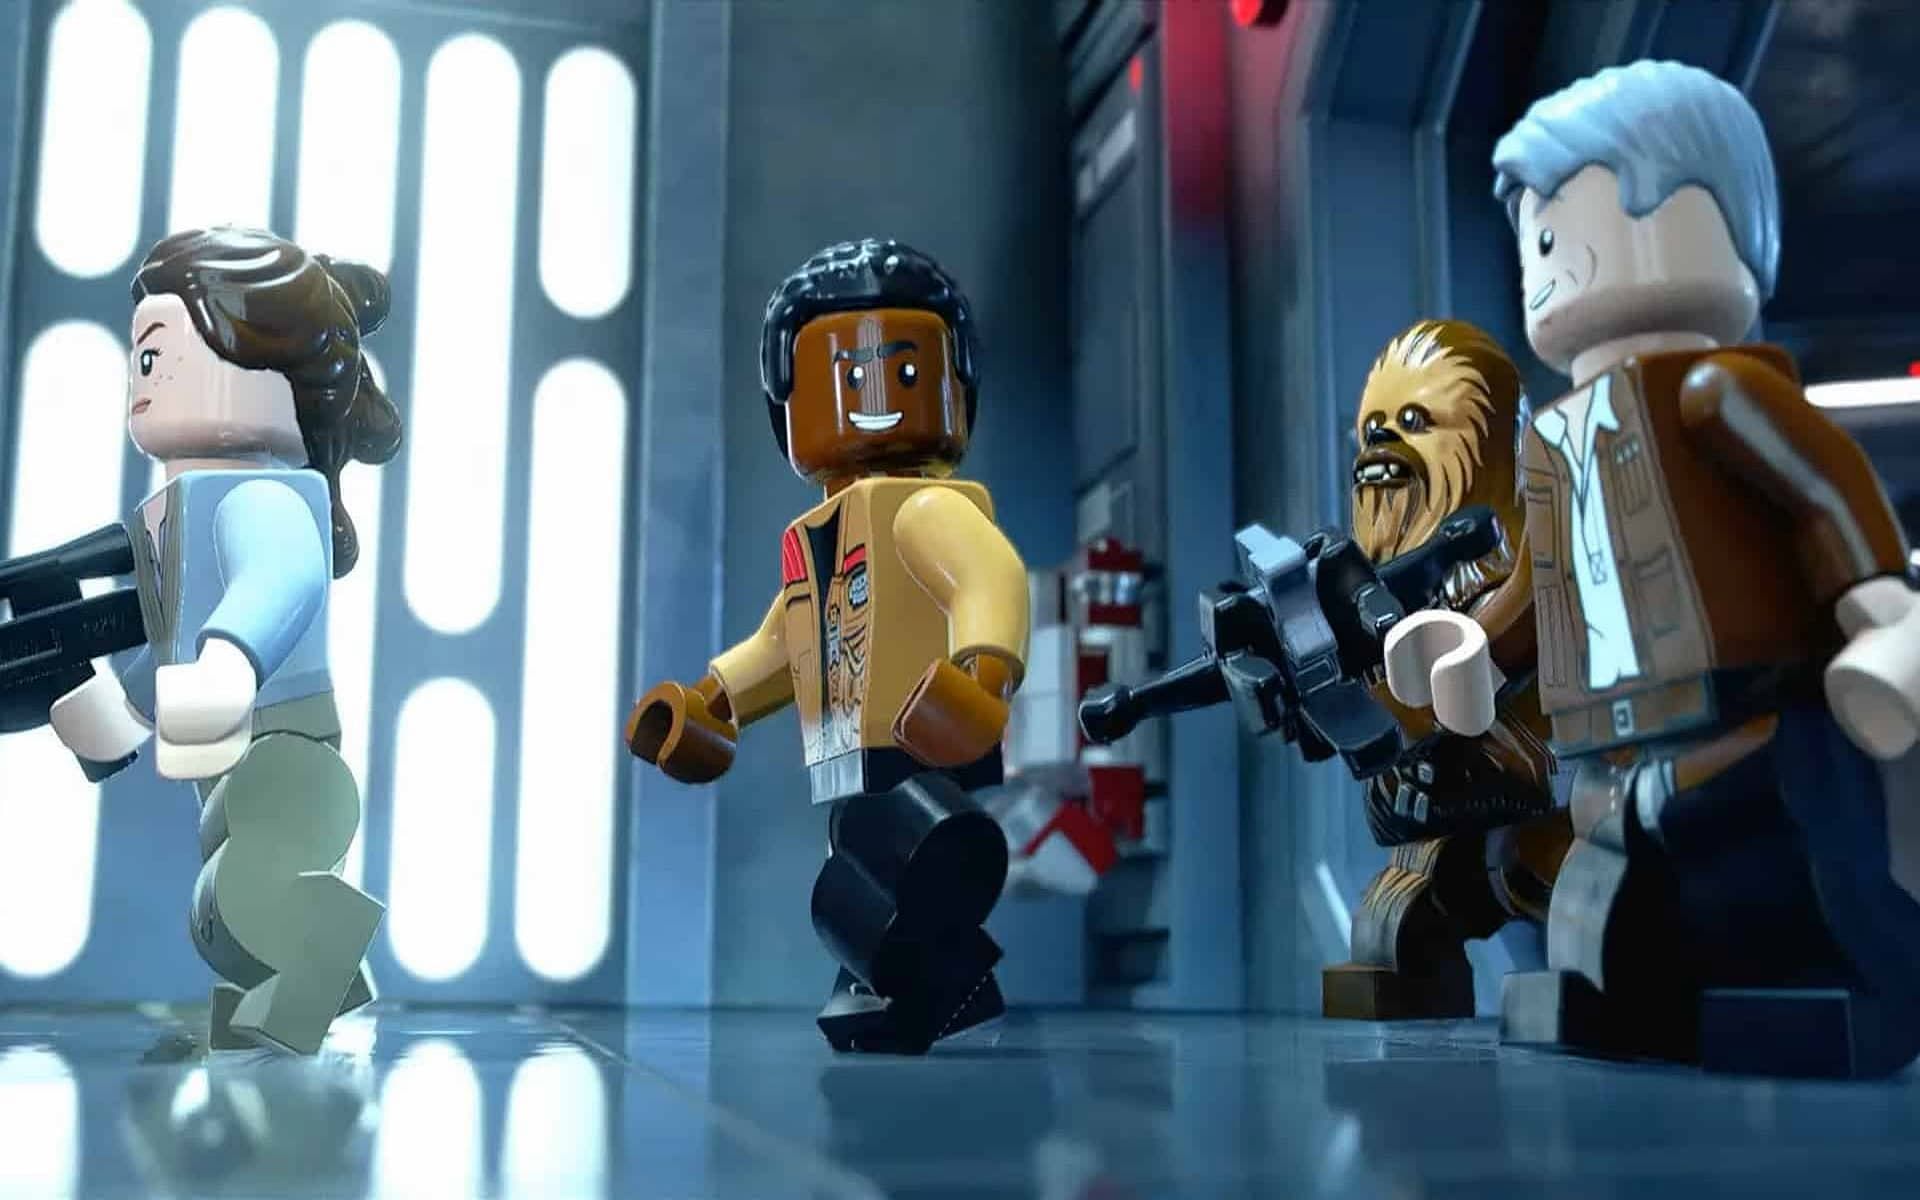 Starkiller Base hosts many challenges in Lego Star Wars: The Skywalker Saga (Image via TT Games)